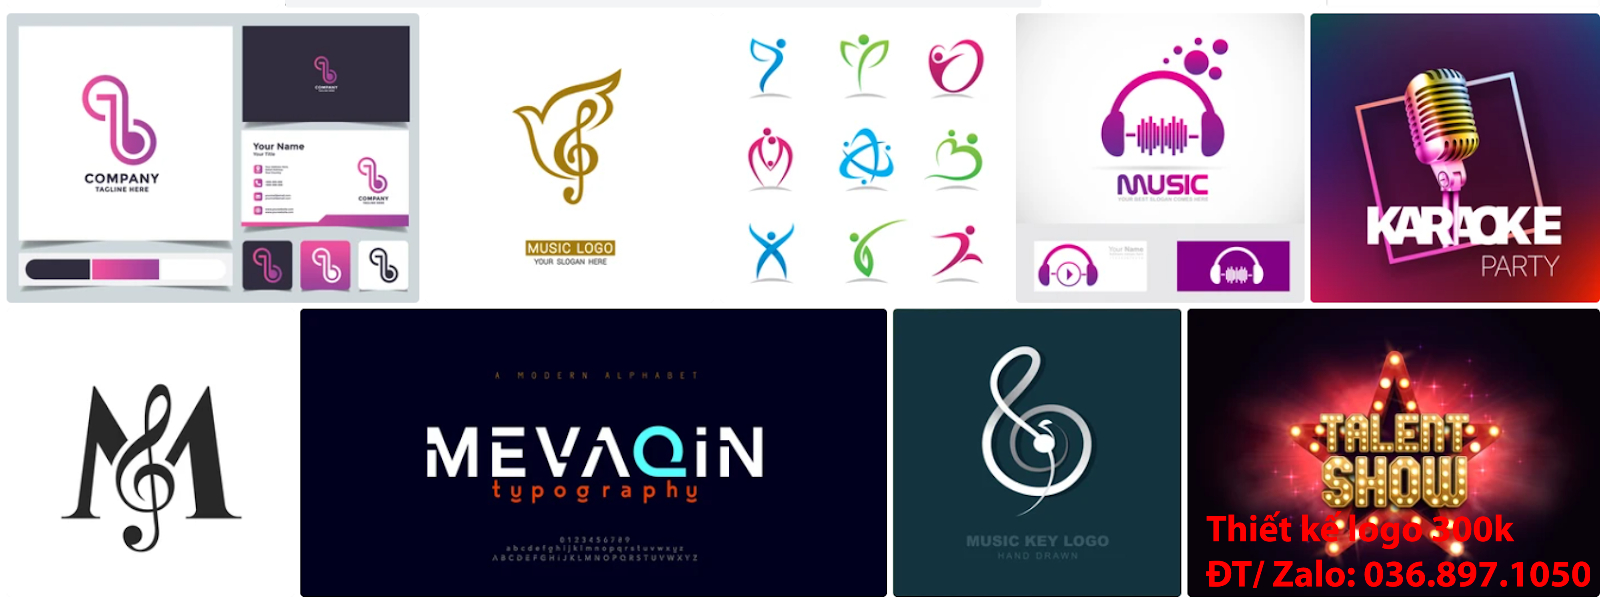 Tạo logo âm nhạc sang trọng khác biệt chất lượng được làm mẫu online, uy tín, chuyên nghiệp với giá rẻ hợp lý từ 300k - 500k